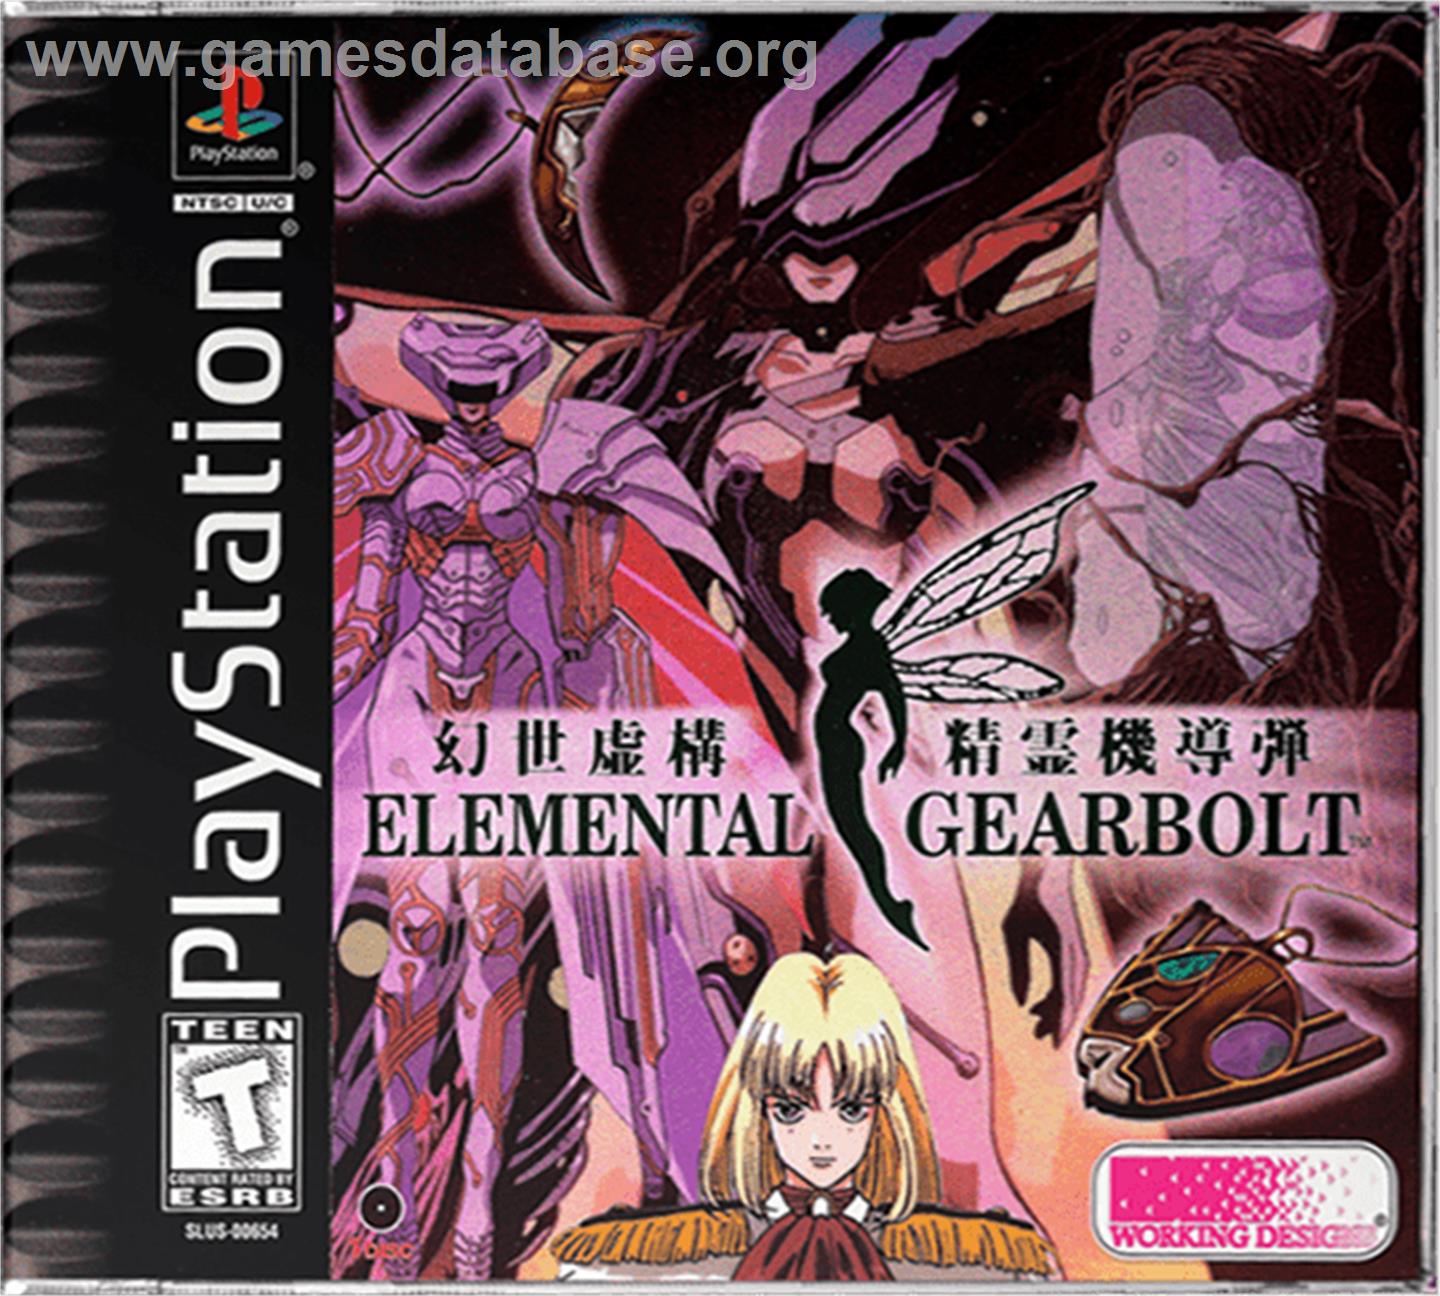 Elemental Gearbolt - Sony Playstation - Artwork - Box